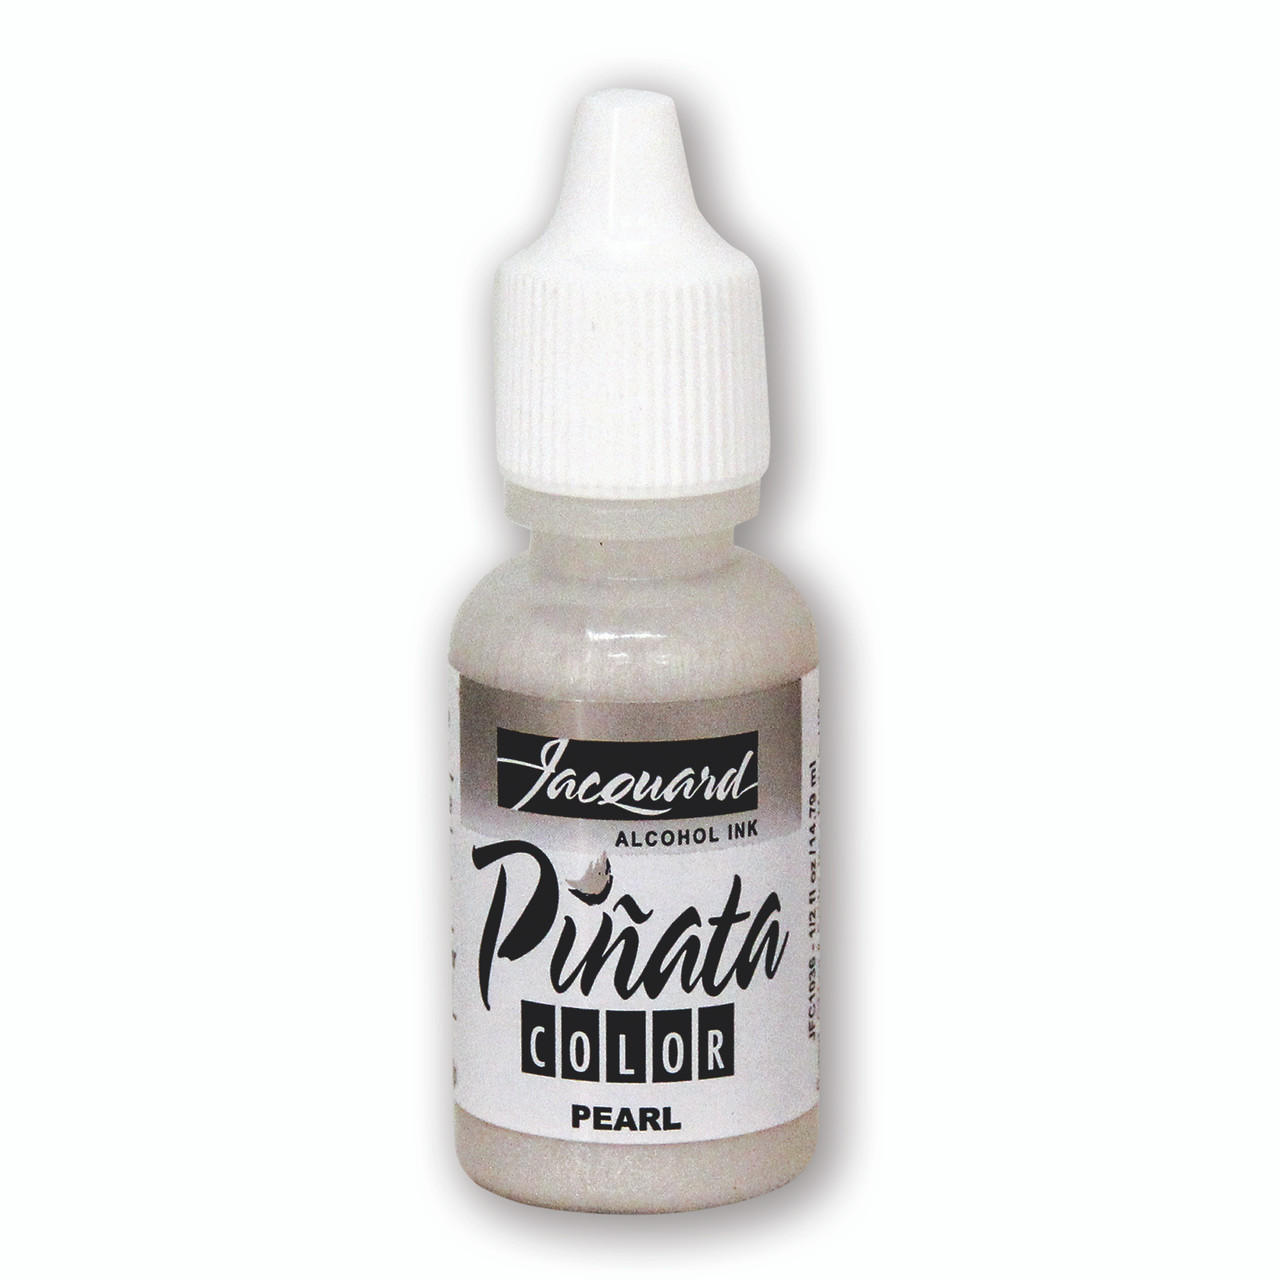 Jacquard Pinata Alcohol Ink 15ml 036 Pearl